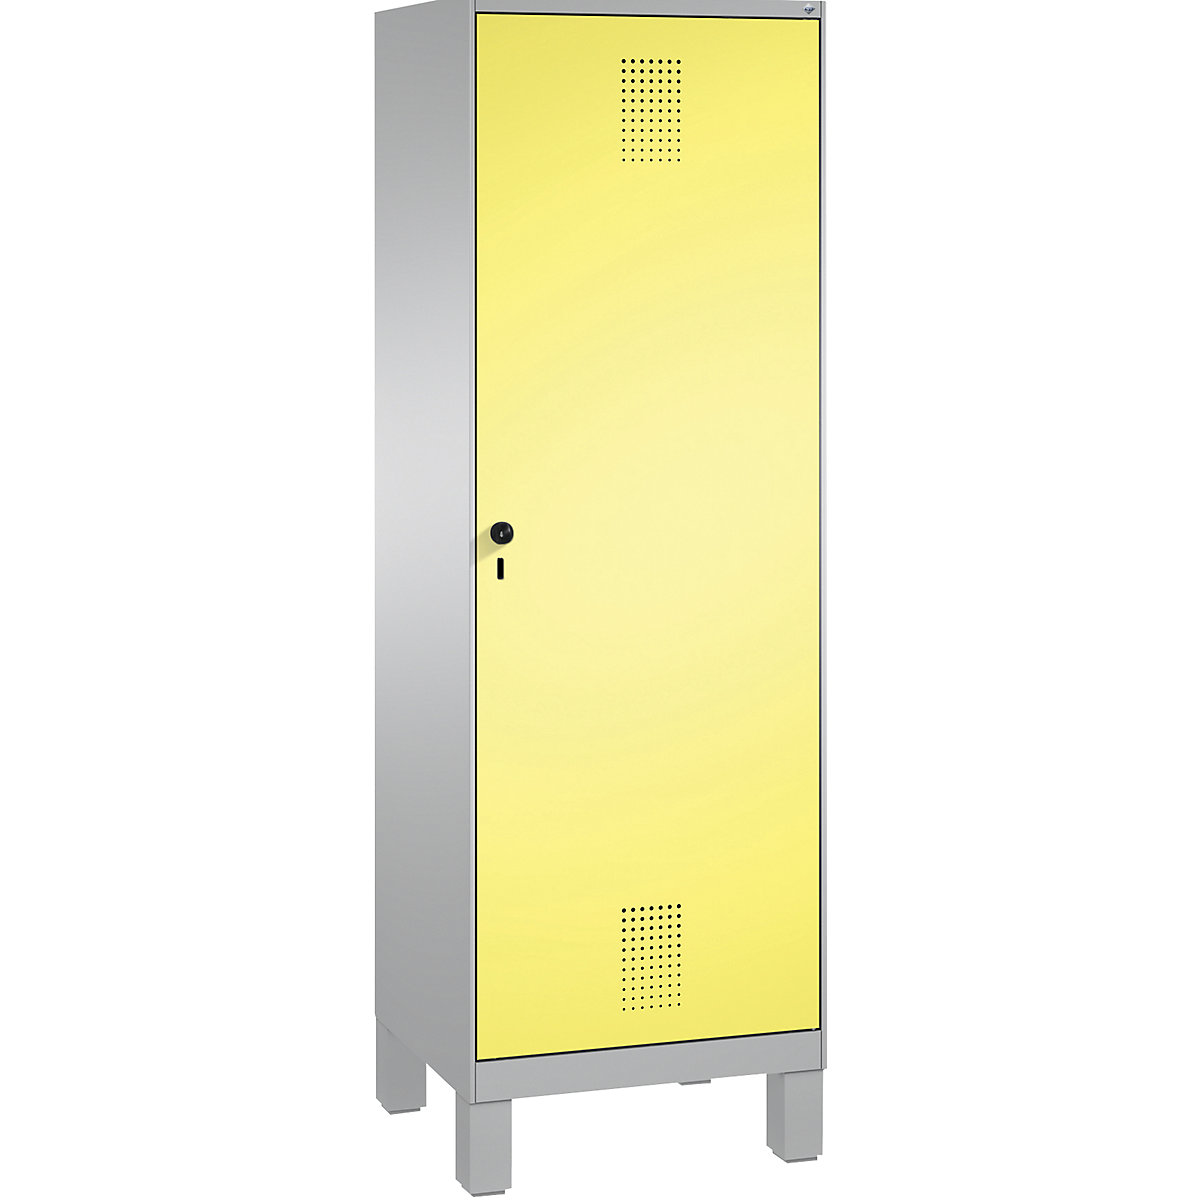 Šatní skříň s nohami EVOLO s dveřmi přes 2 oddíly – C+P, 2 oddíly, 1 dveře, šířka oddílu 300 mm, bílý hliník / sírová žlutá-3